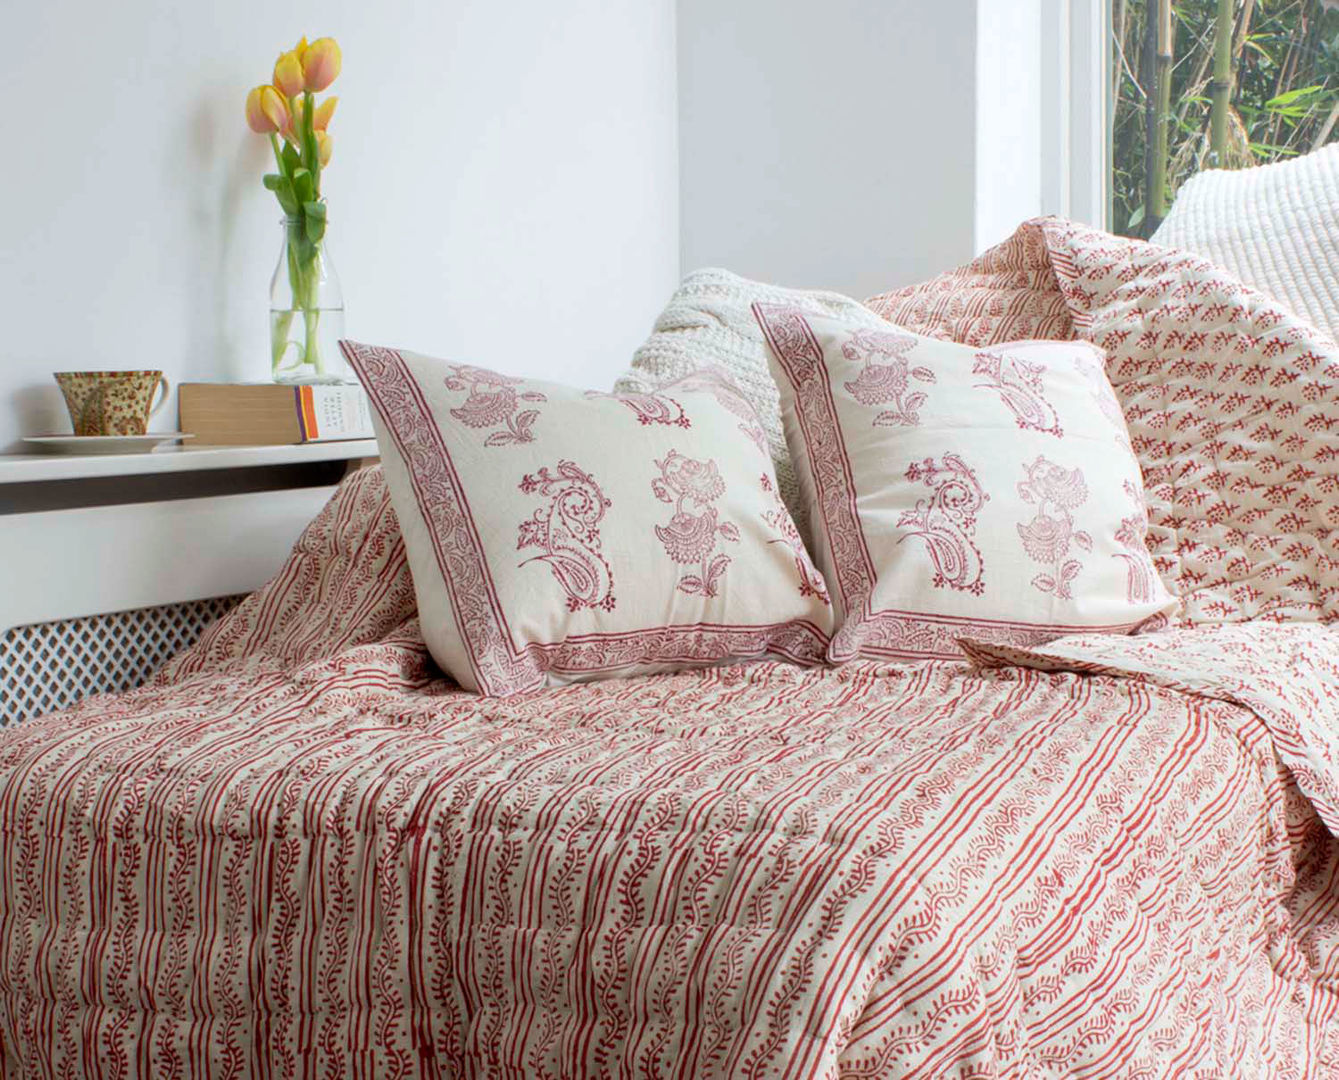 Hand Block Print Quilt Cranberry DesignRaaga Спальня в азиатском стиле Текстиль